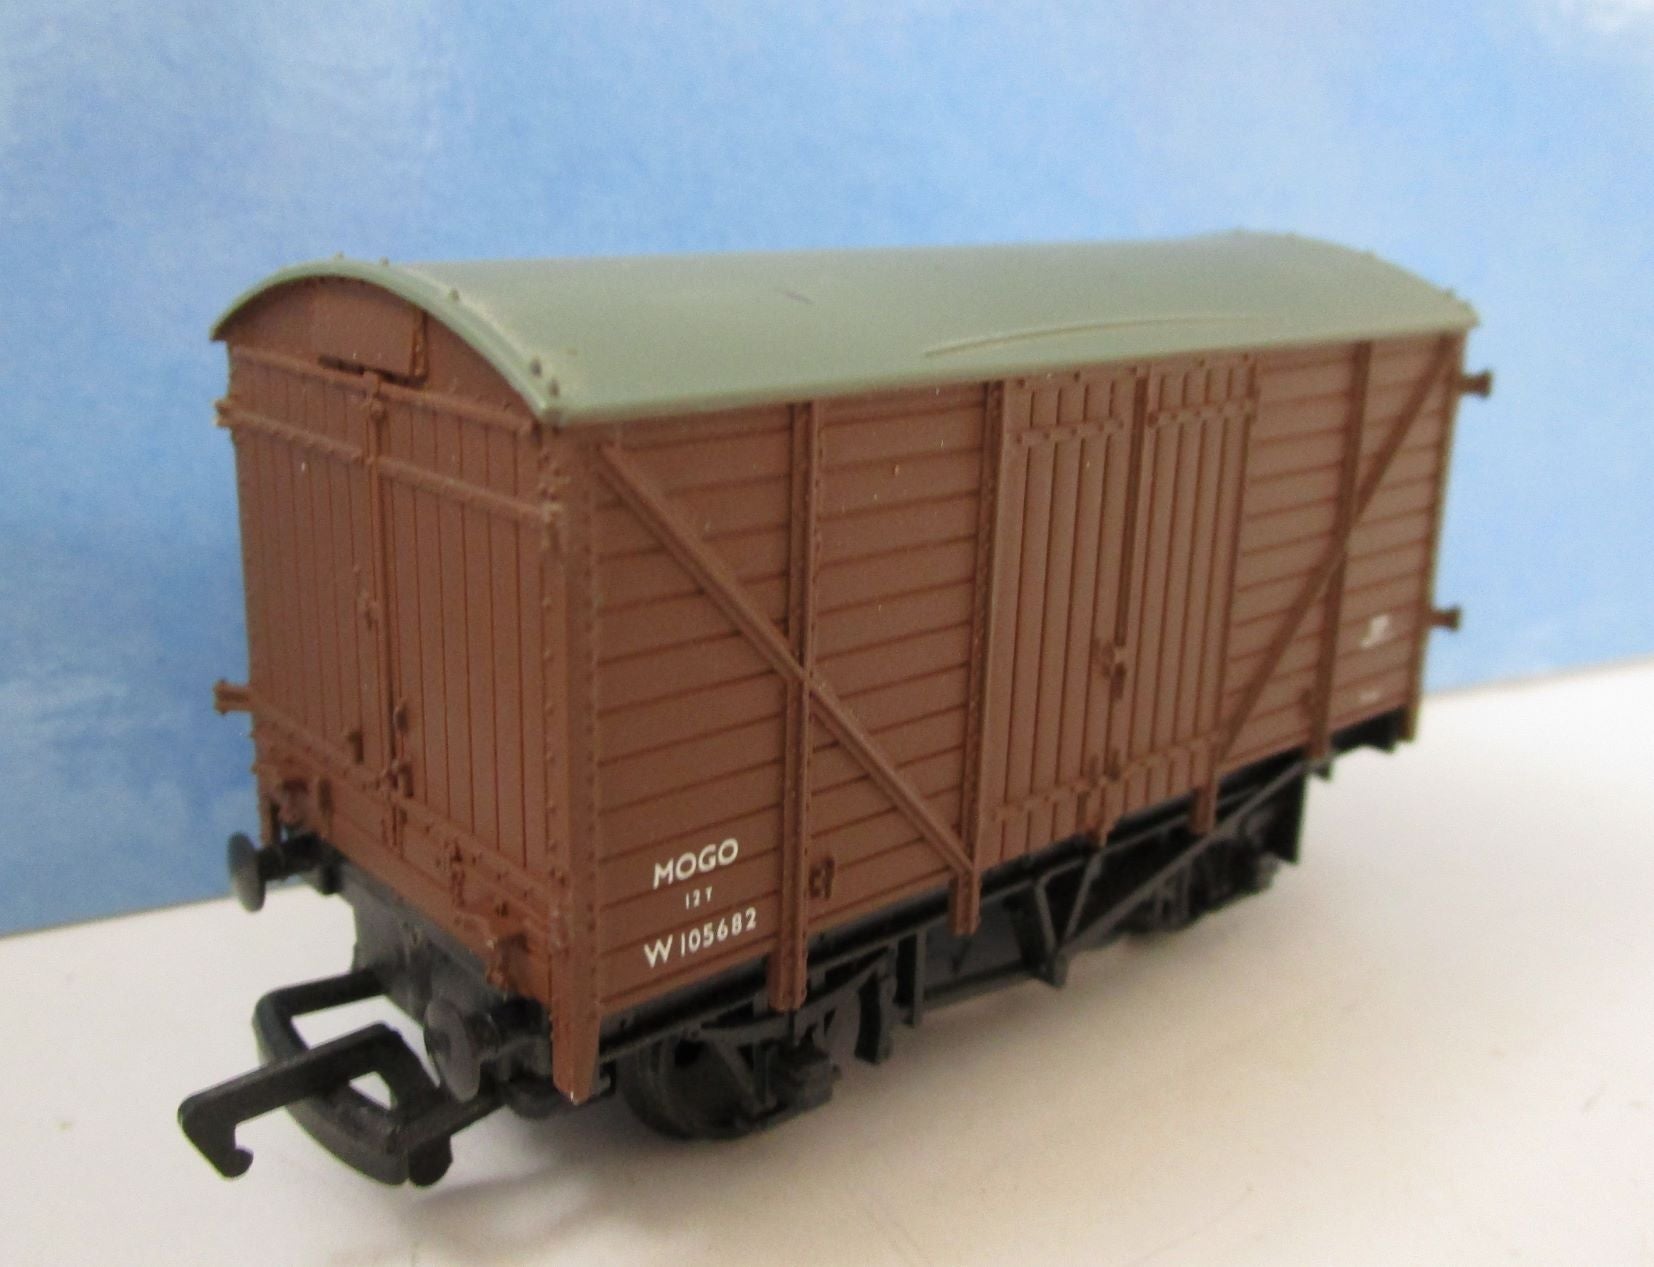 37412-P01 MAINLINE 12t MOGO van W105682 in BR brown - (Unboxed)